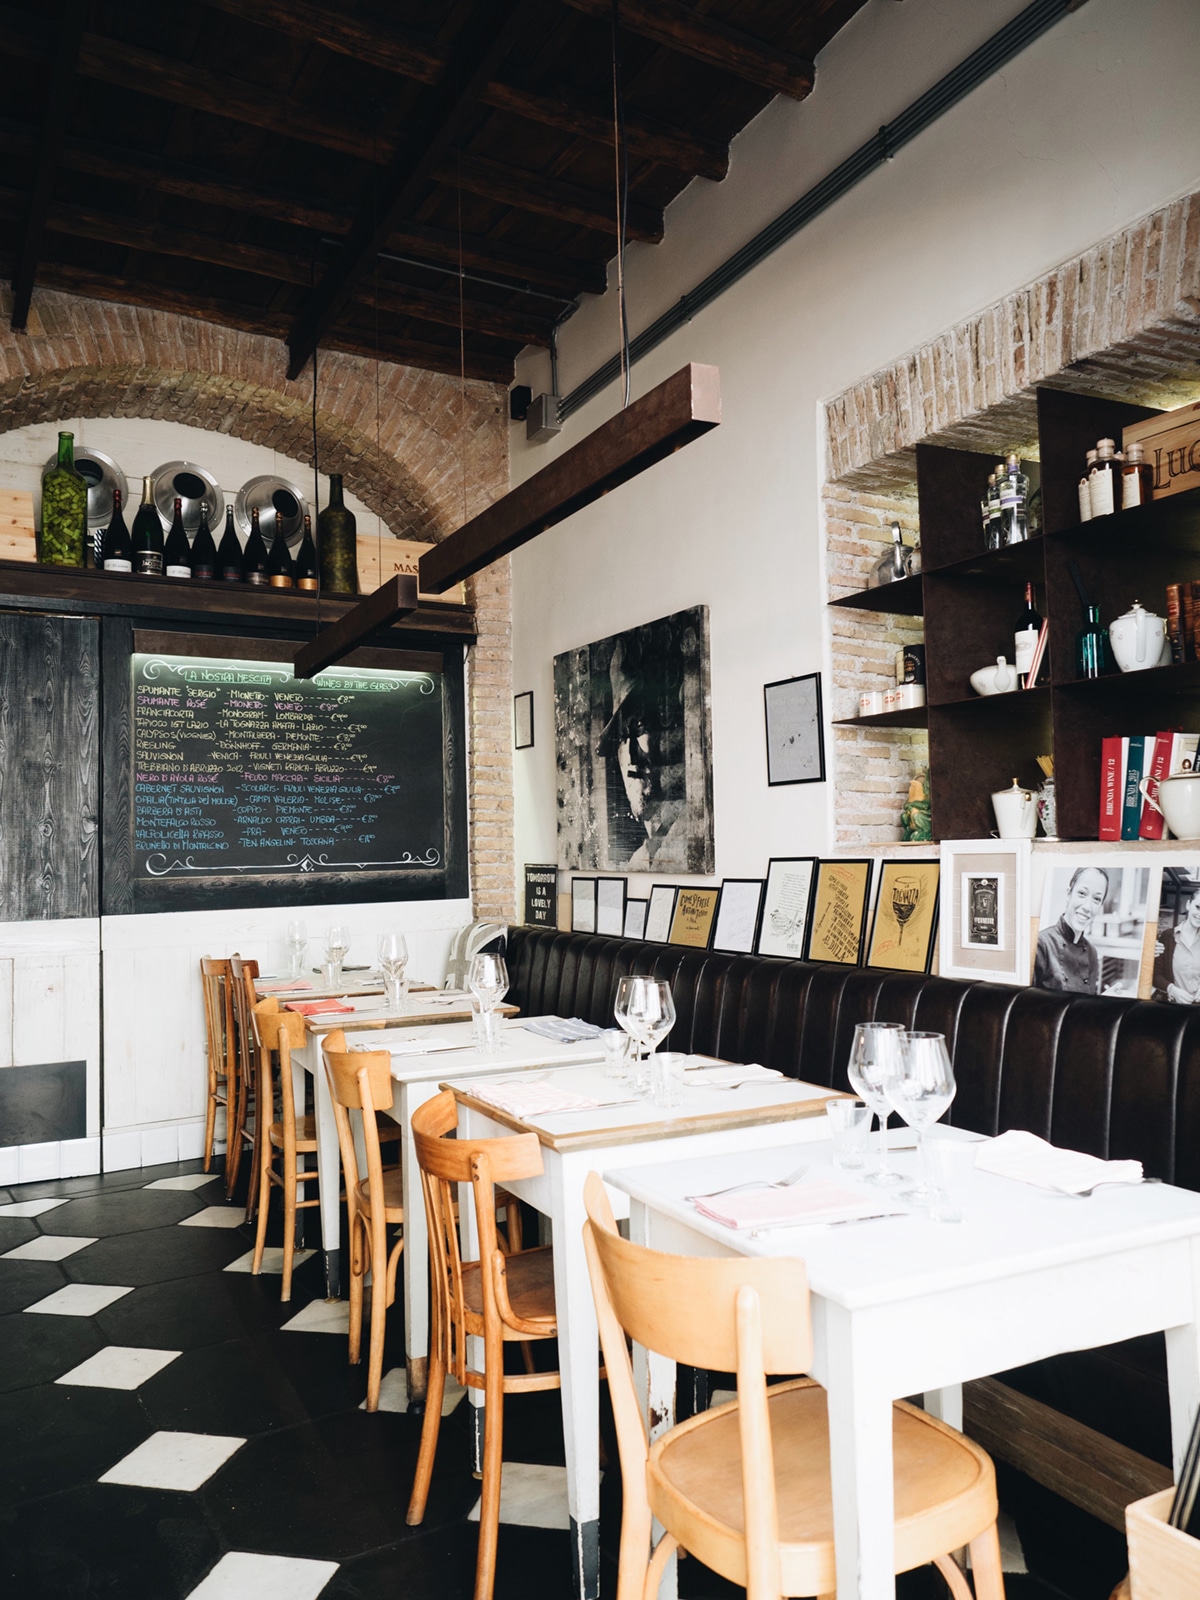 the interior of Dilla restaurant in Rome | travel guide via coco kelley